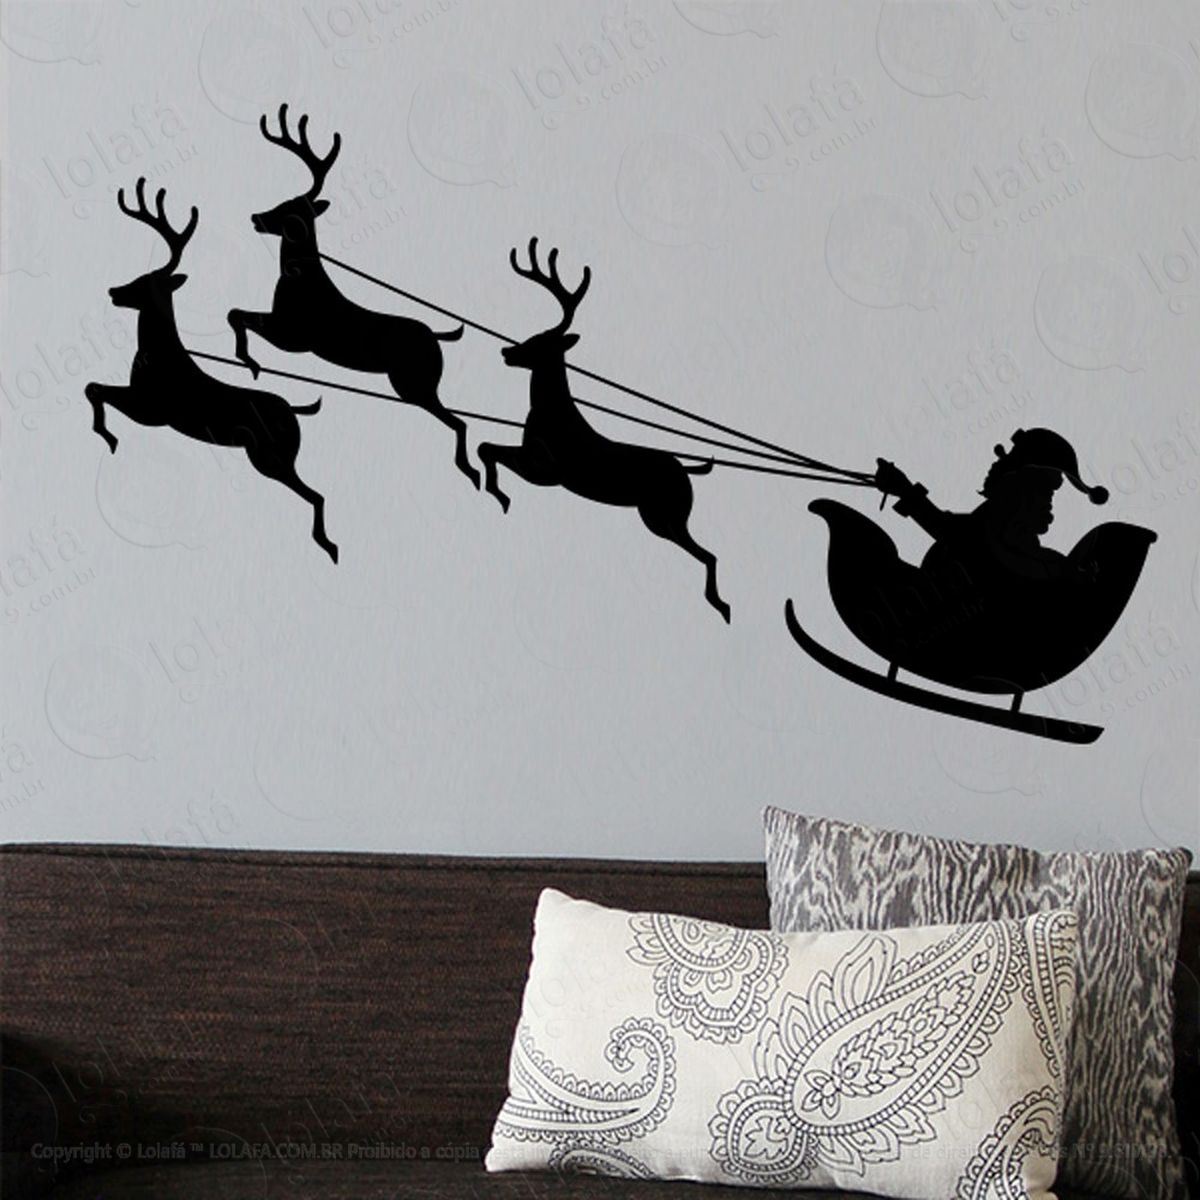 trio de renas no trenó adesivo de natal para vitrine, parede, porta de vidro - decoração natalina mod:257